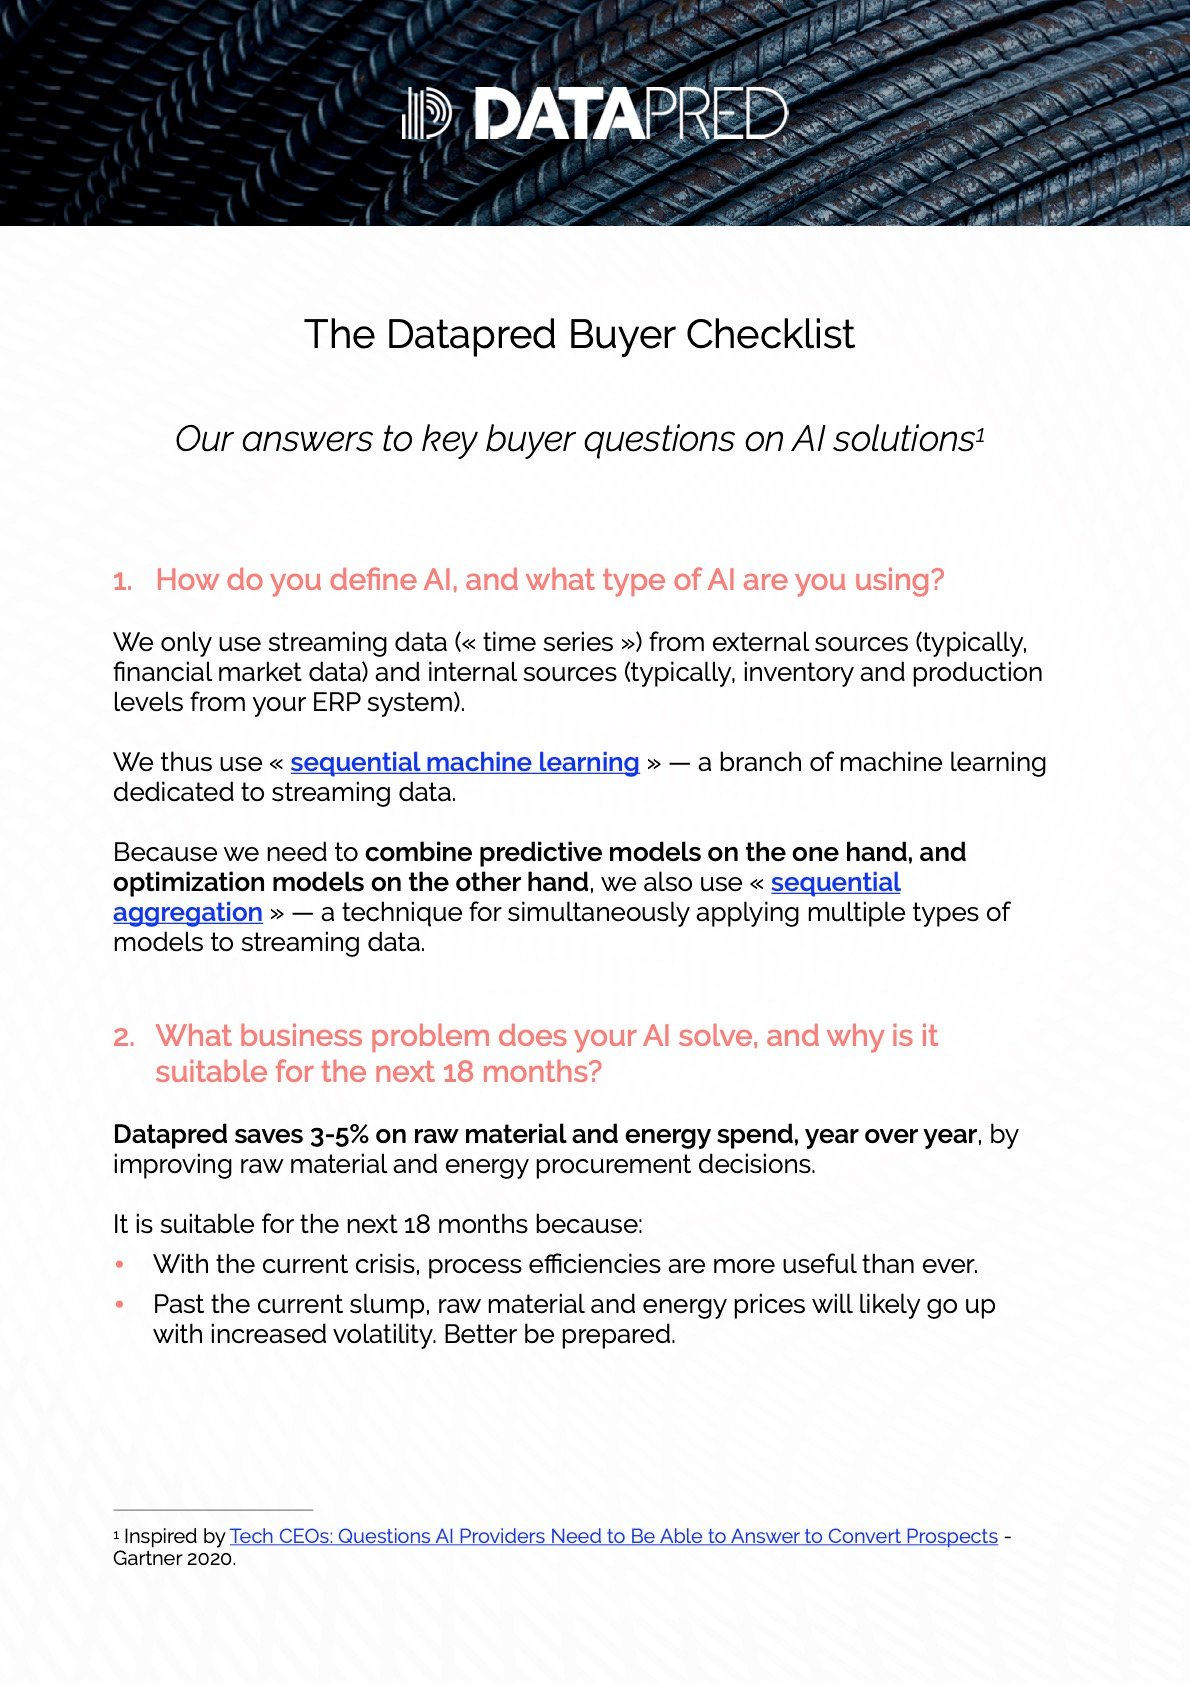 Datapred Buyer Checklist